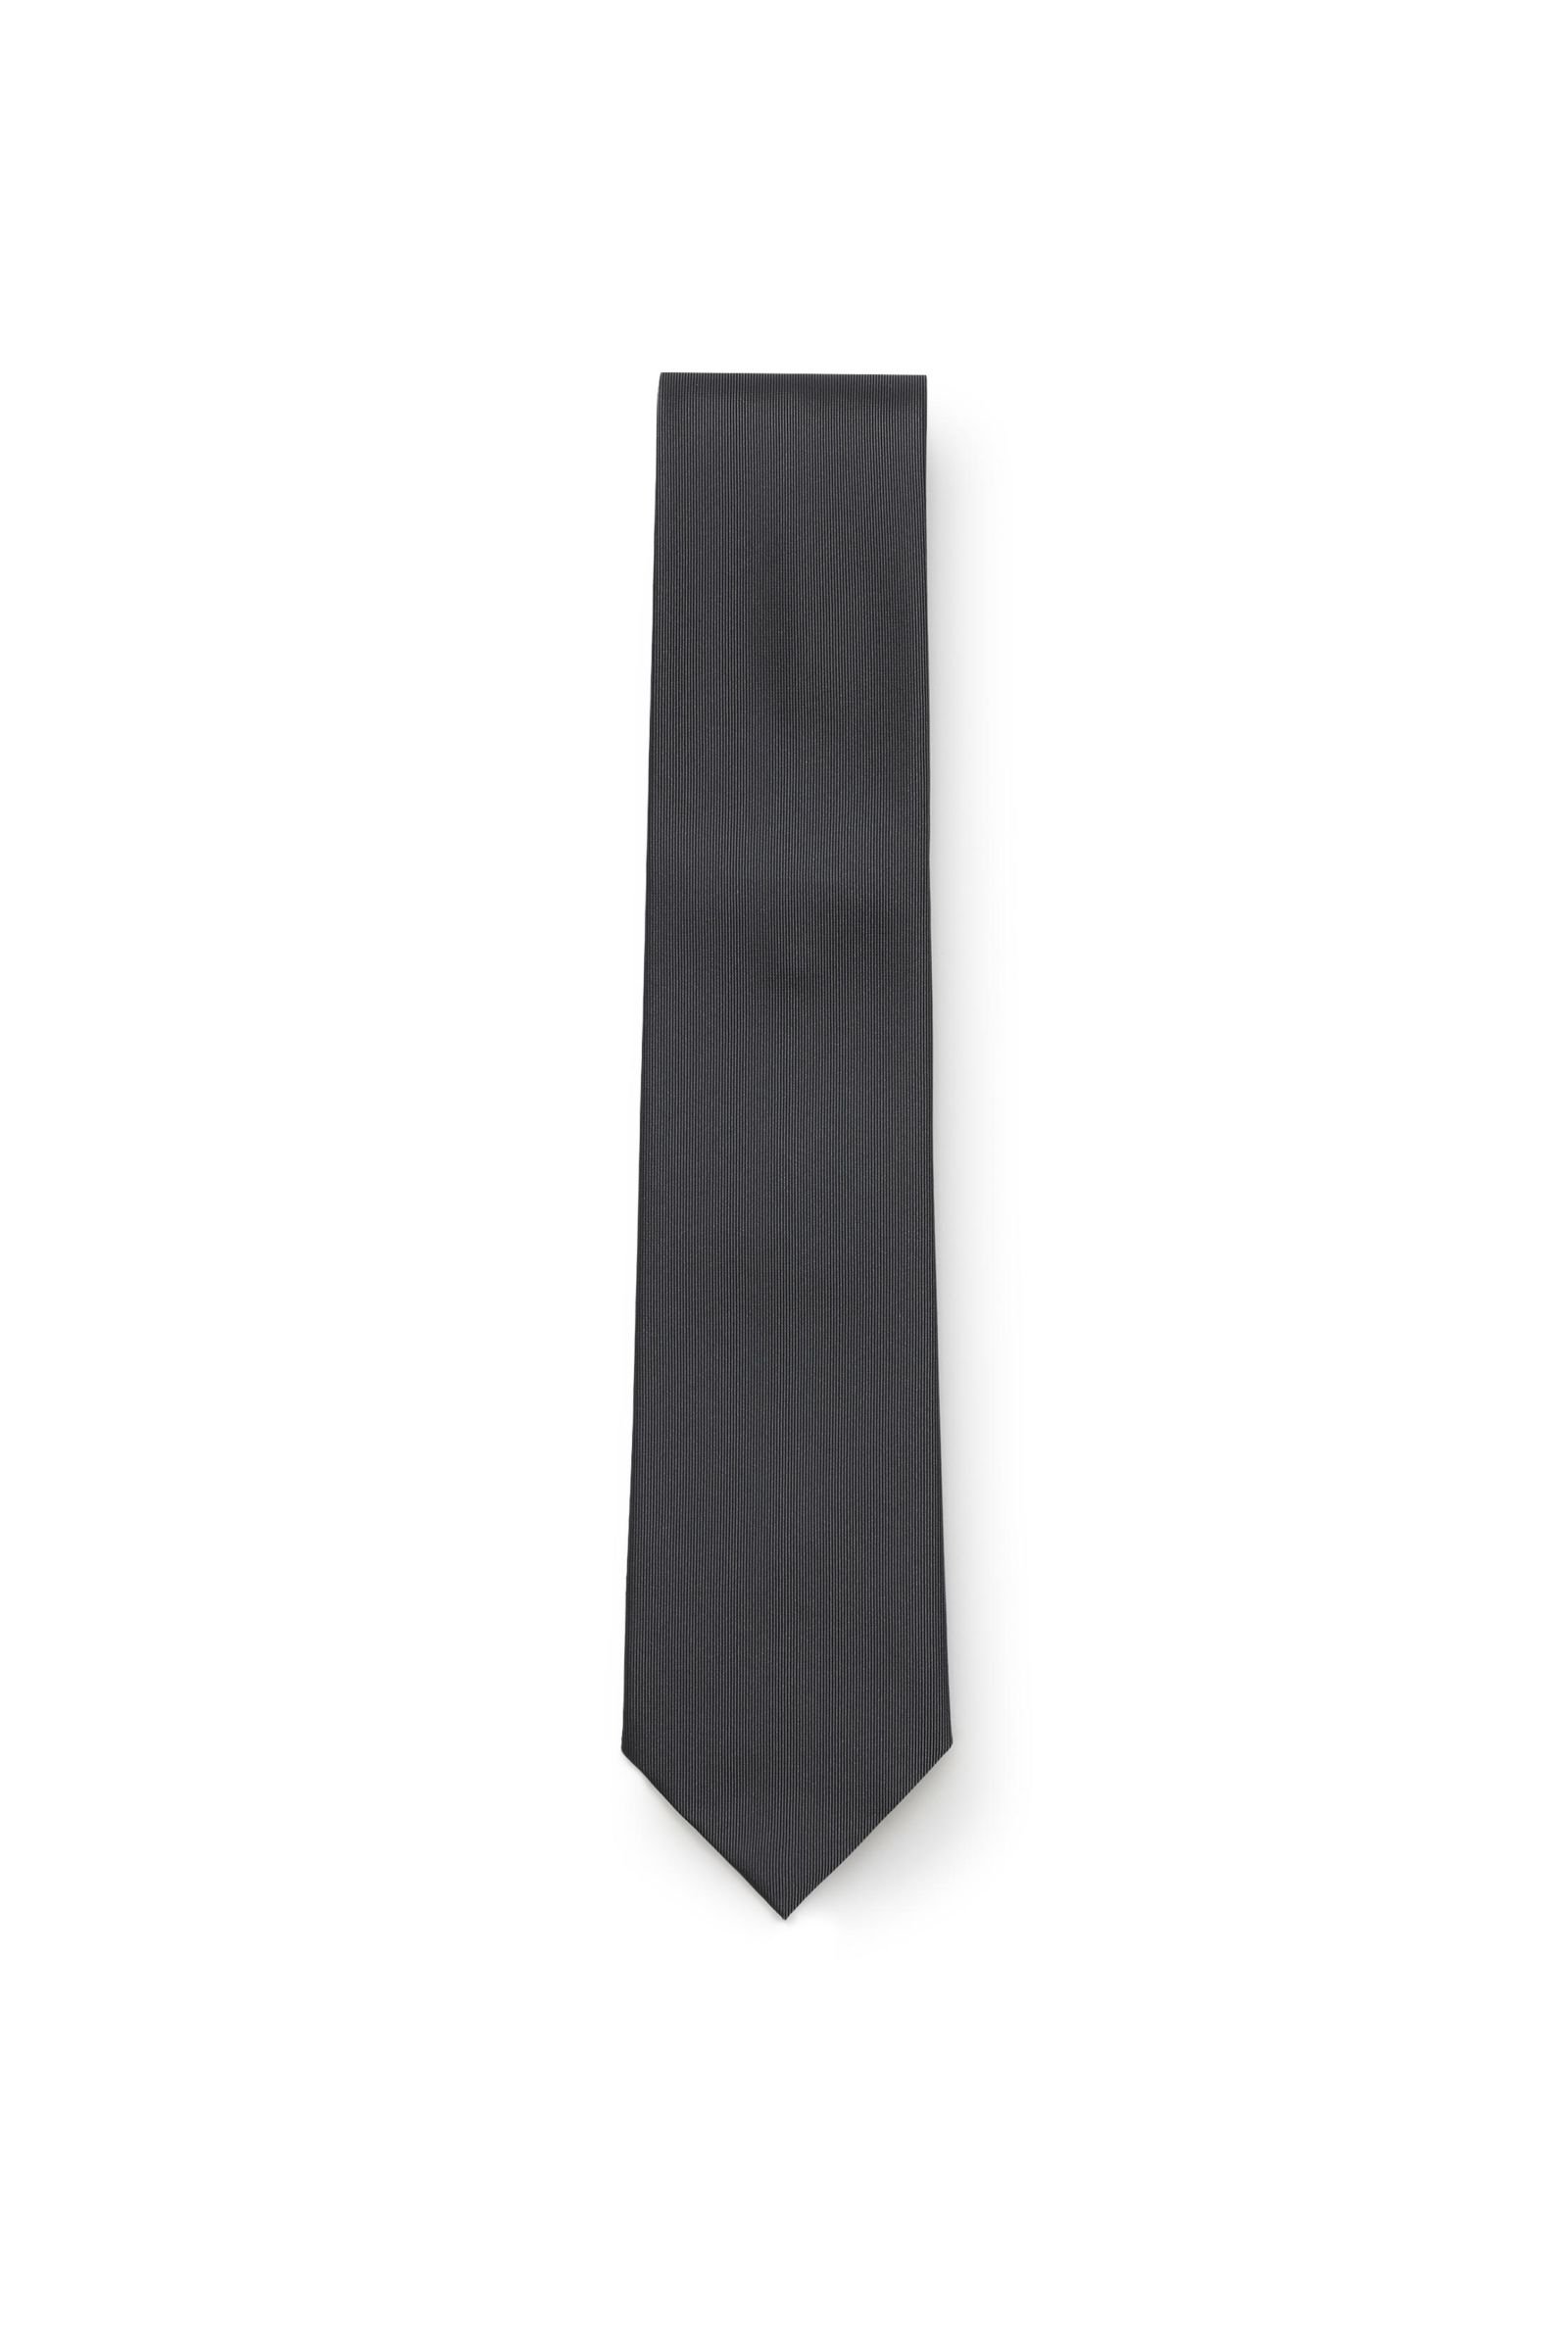 Silk tie grey